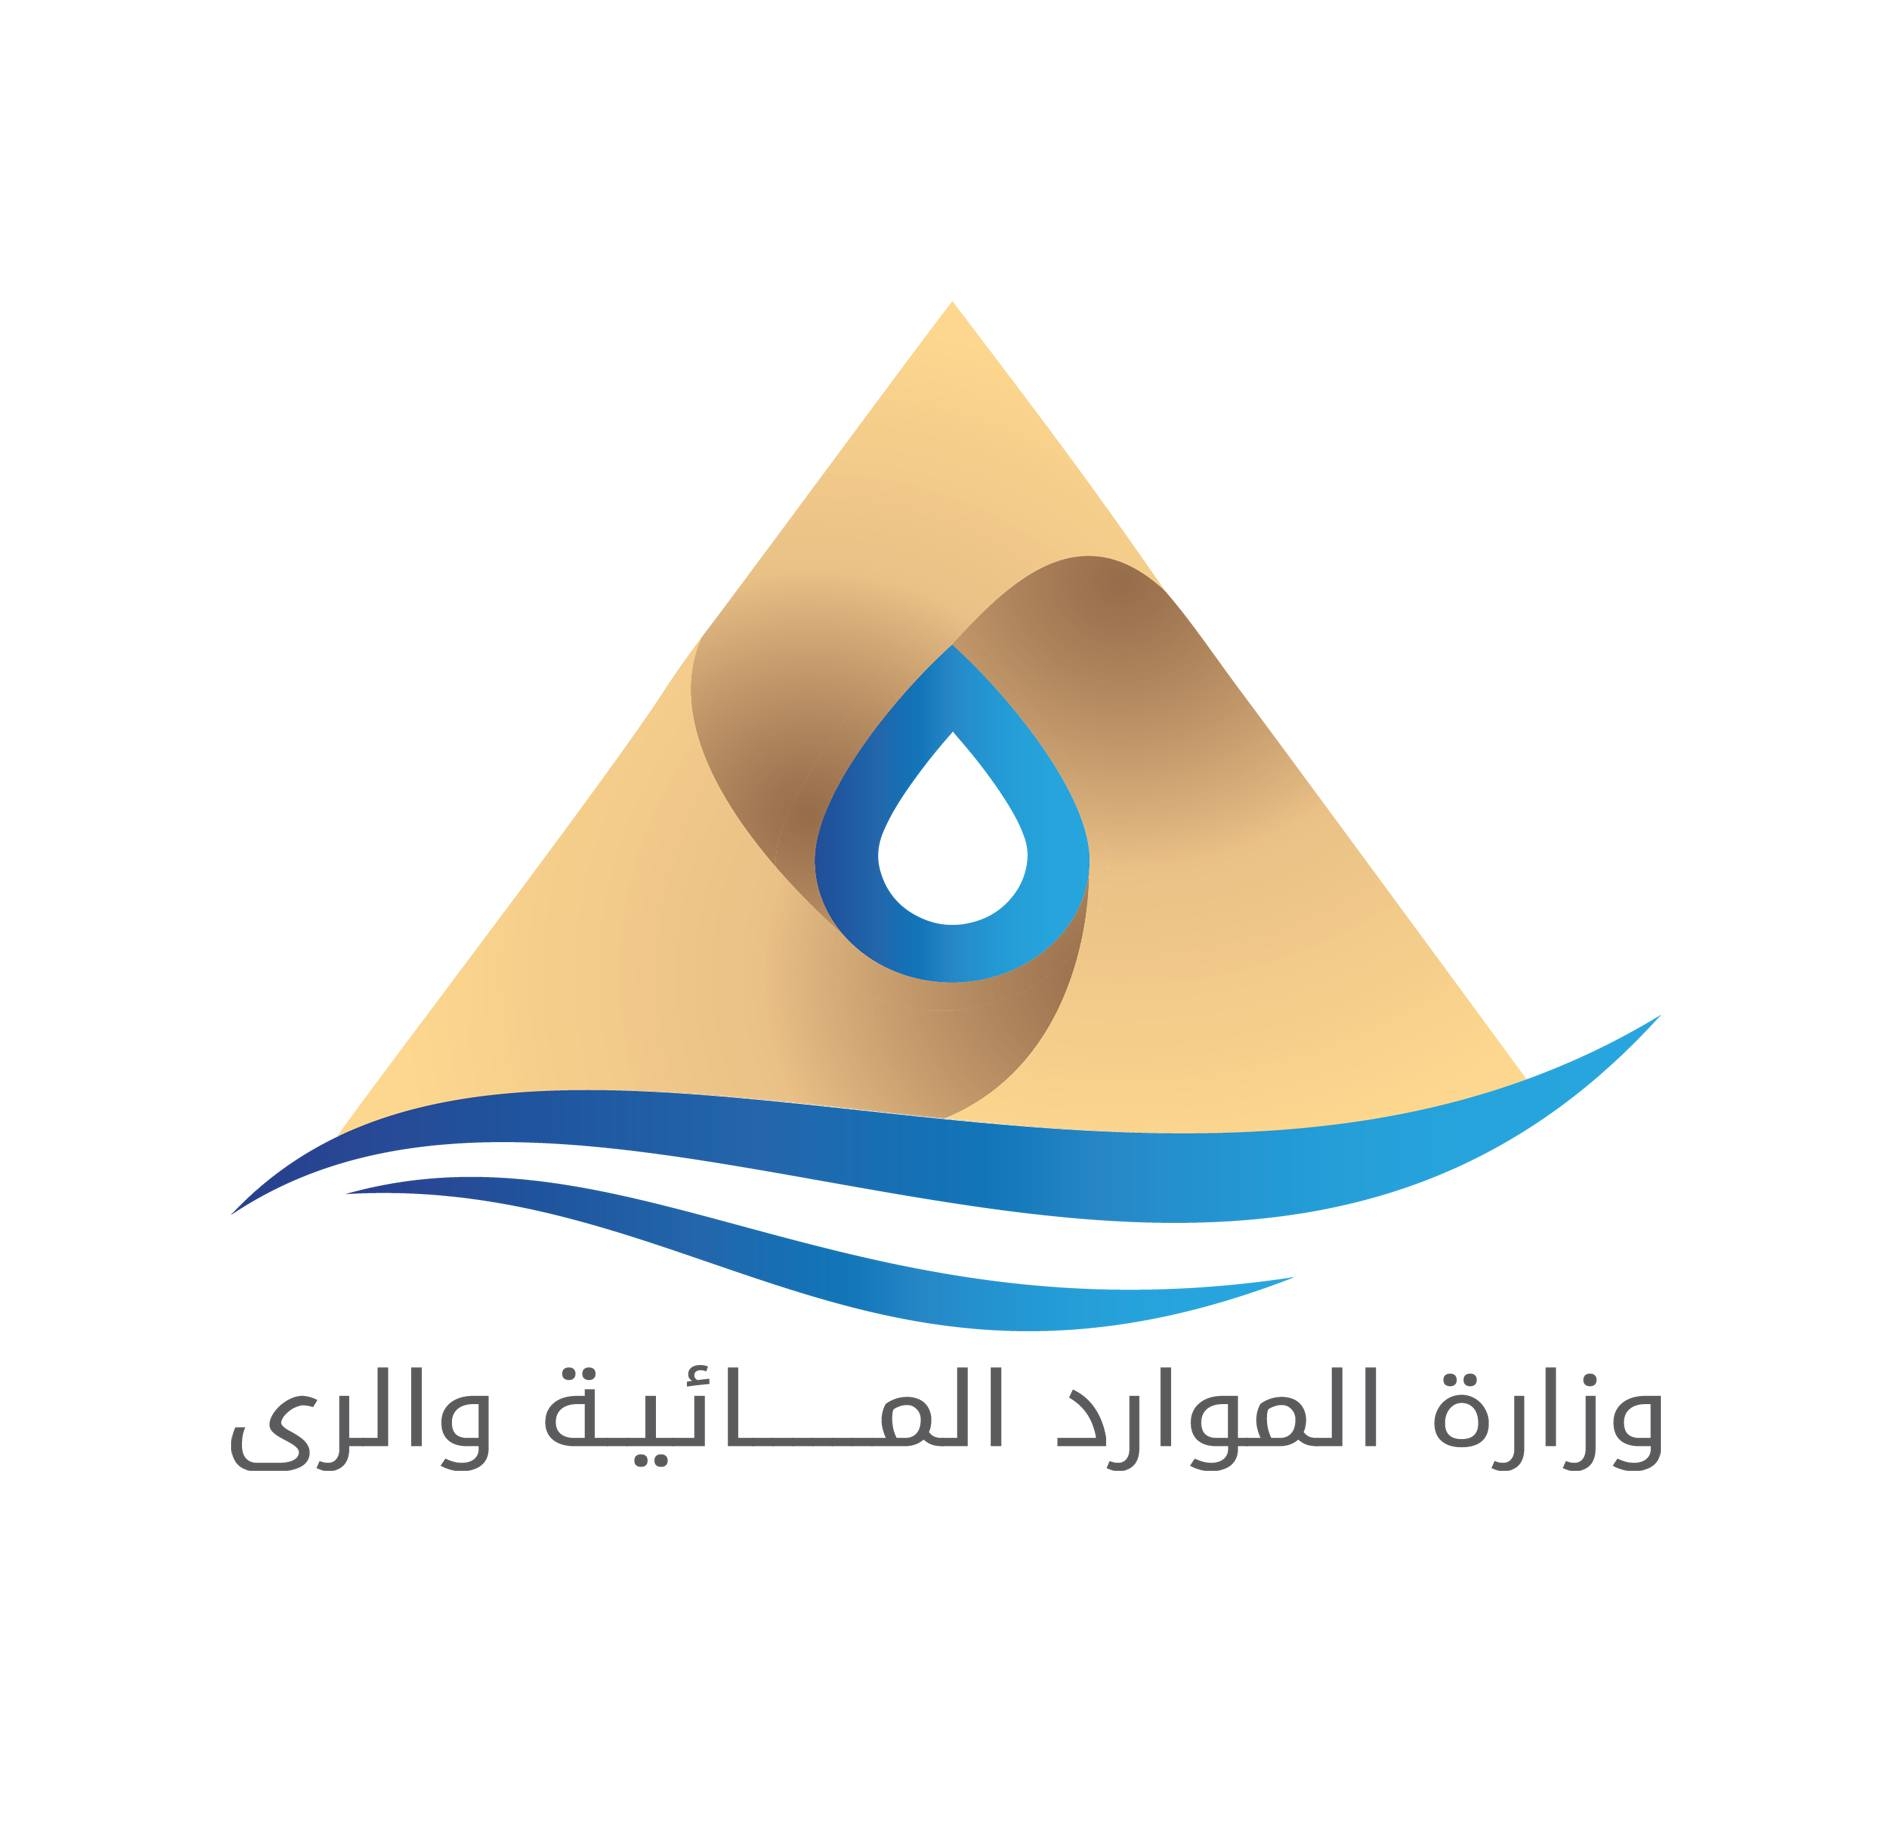 وظائف حكومية وزارة الموارد المائية والري تعلن عن وظائف خالية بالهيئة المصرية العامة لحماية الشواطئ عن طريق الندب بتاريخ 18-11-2022